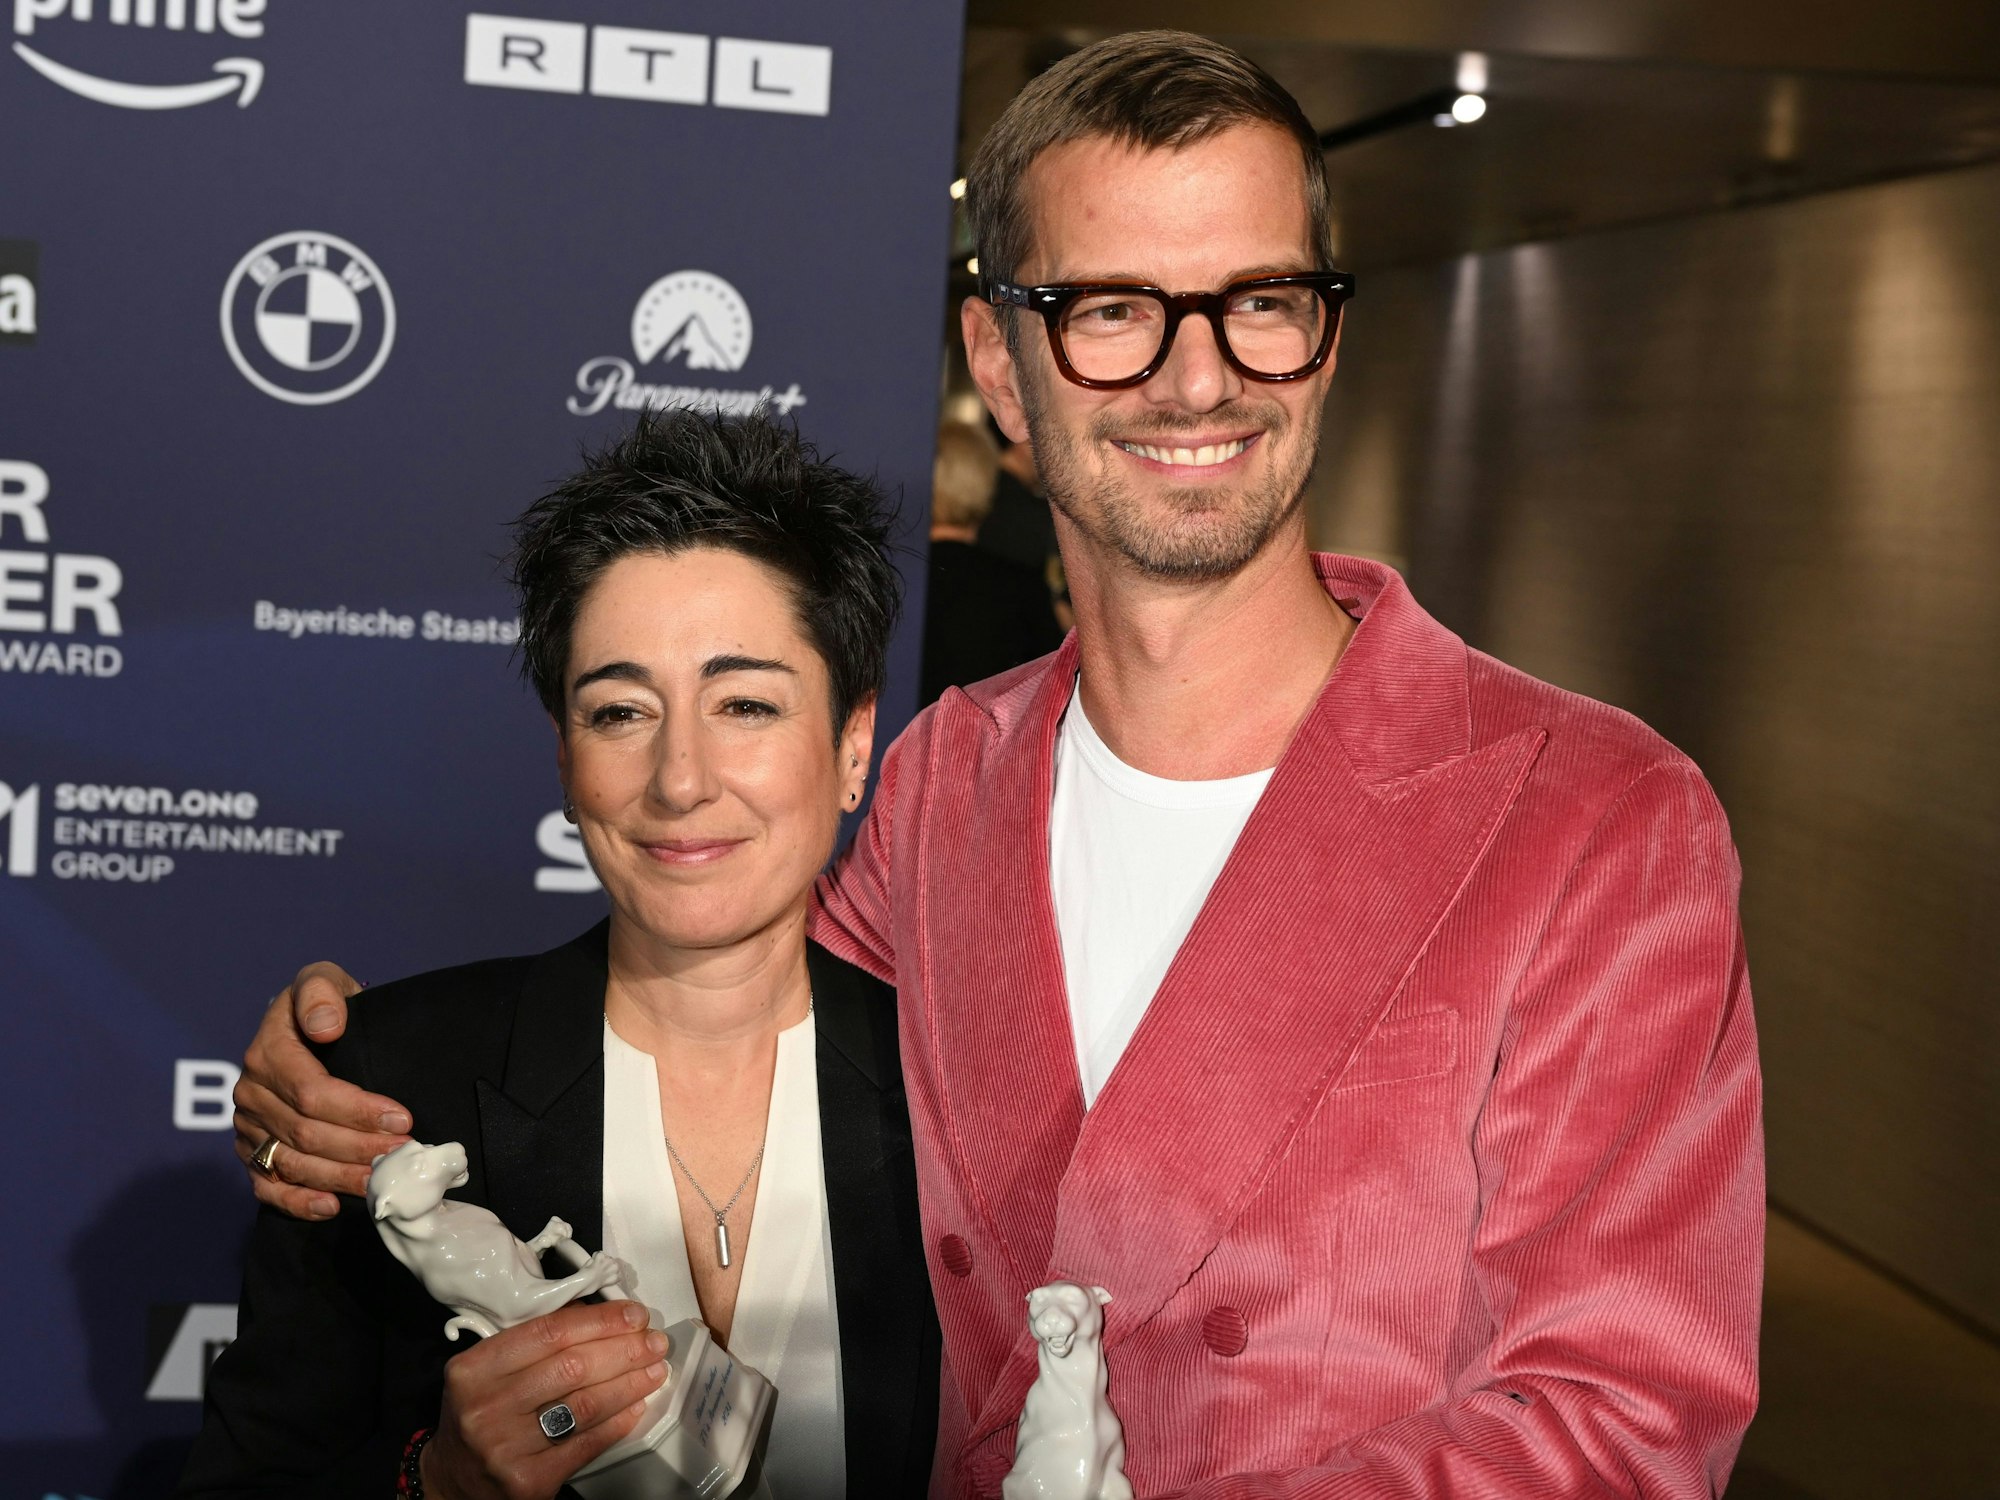 Journalistin Dunja Hayali und Joko Winterscheidt präsentieren ihre Trophäen nach der Verleihung des TV- und Streaming-Awards ‚Blauer Panther‘ am Mittwoch (25. Oktober).